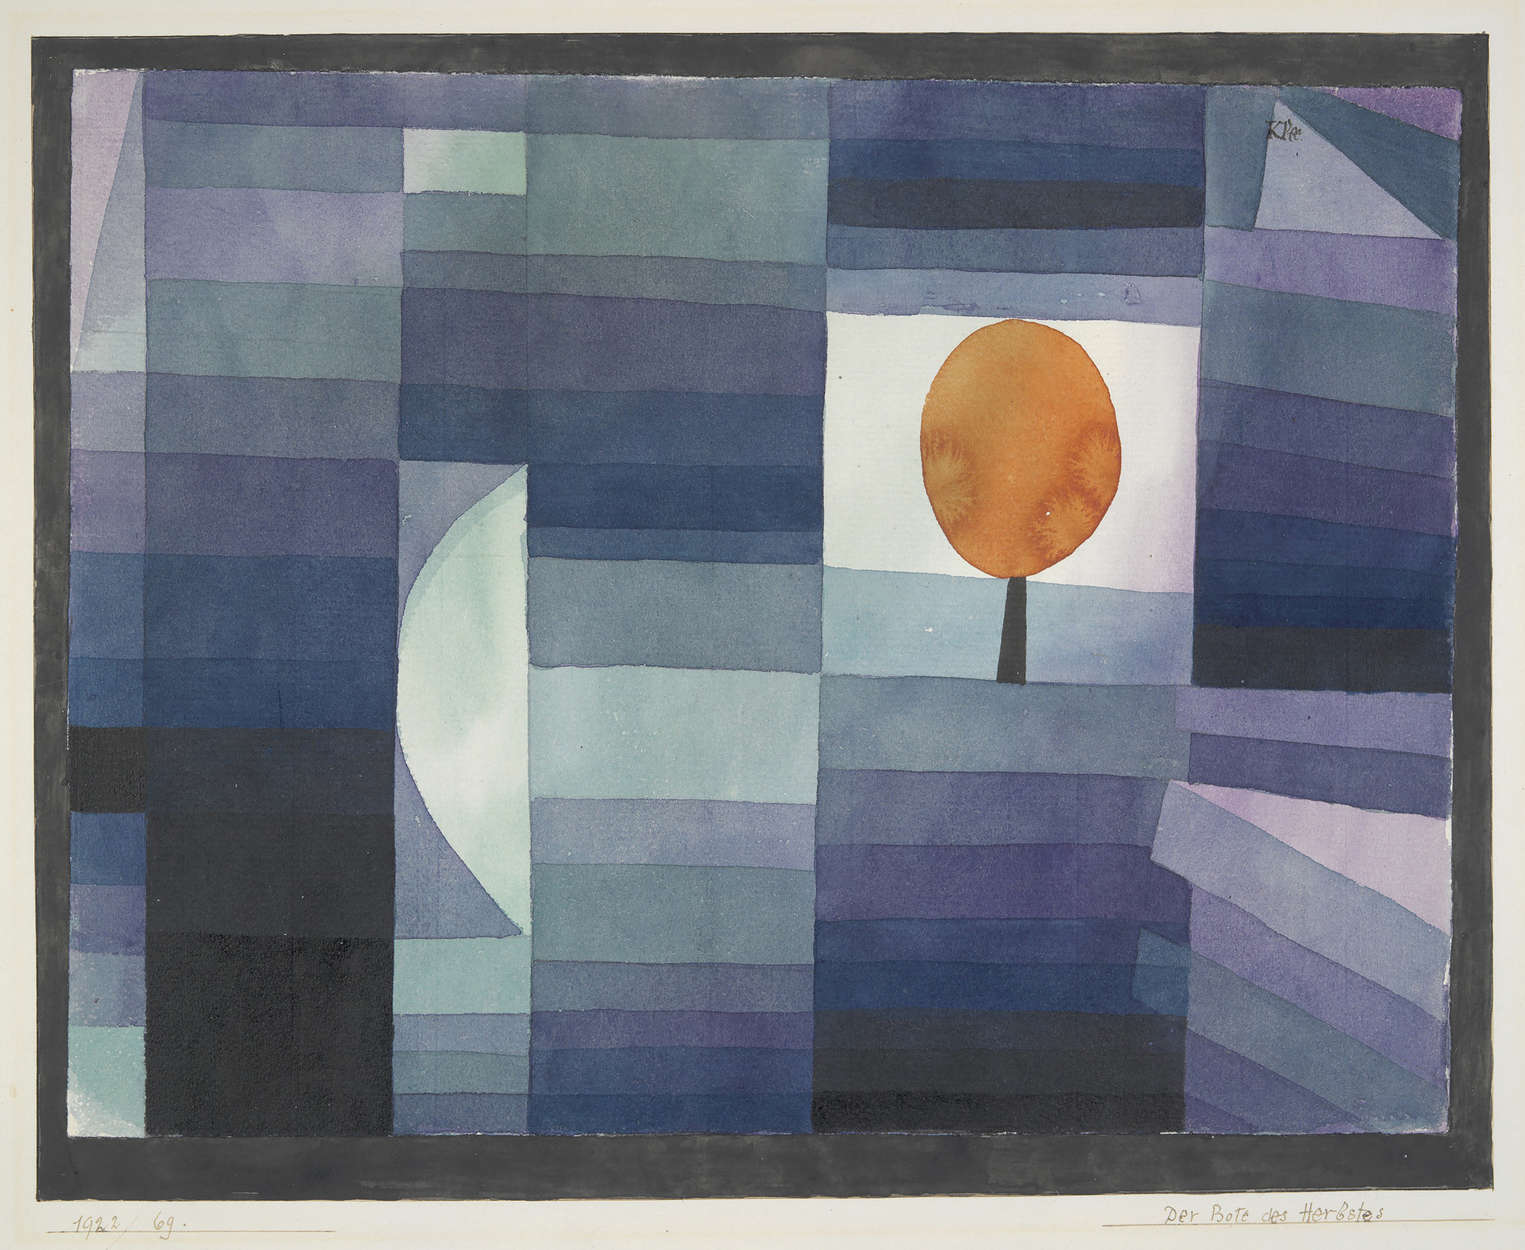             Mural "El presagio del otoño" de Paul Klee
        